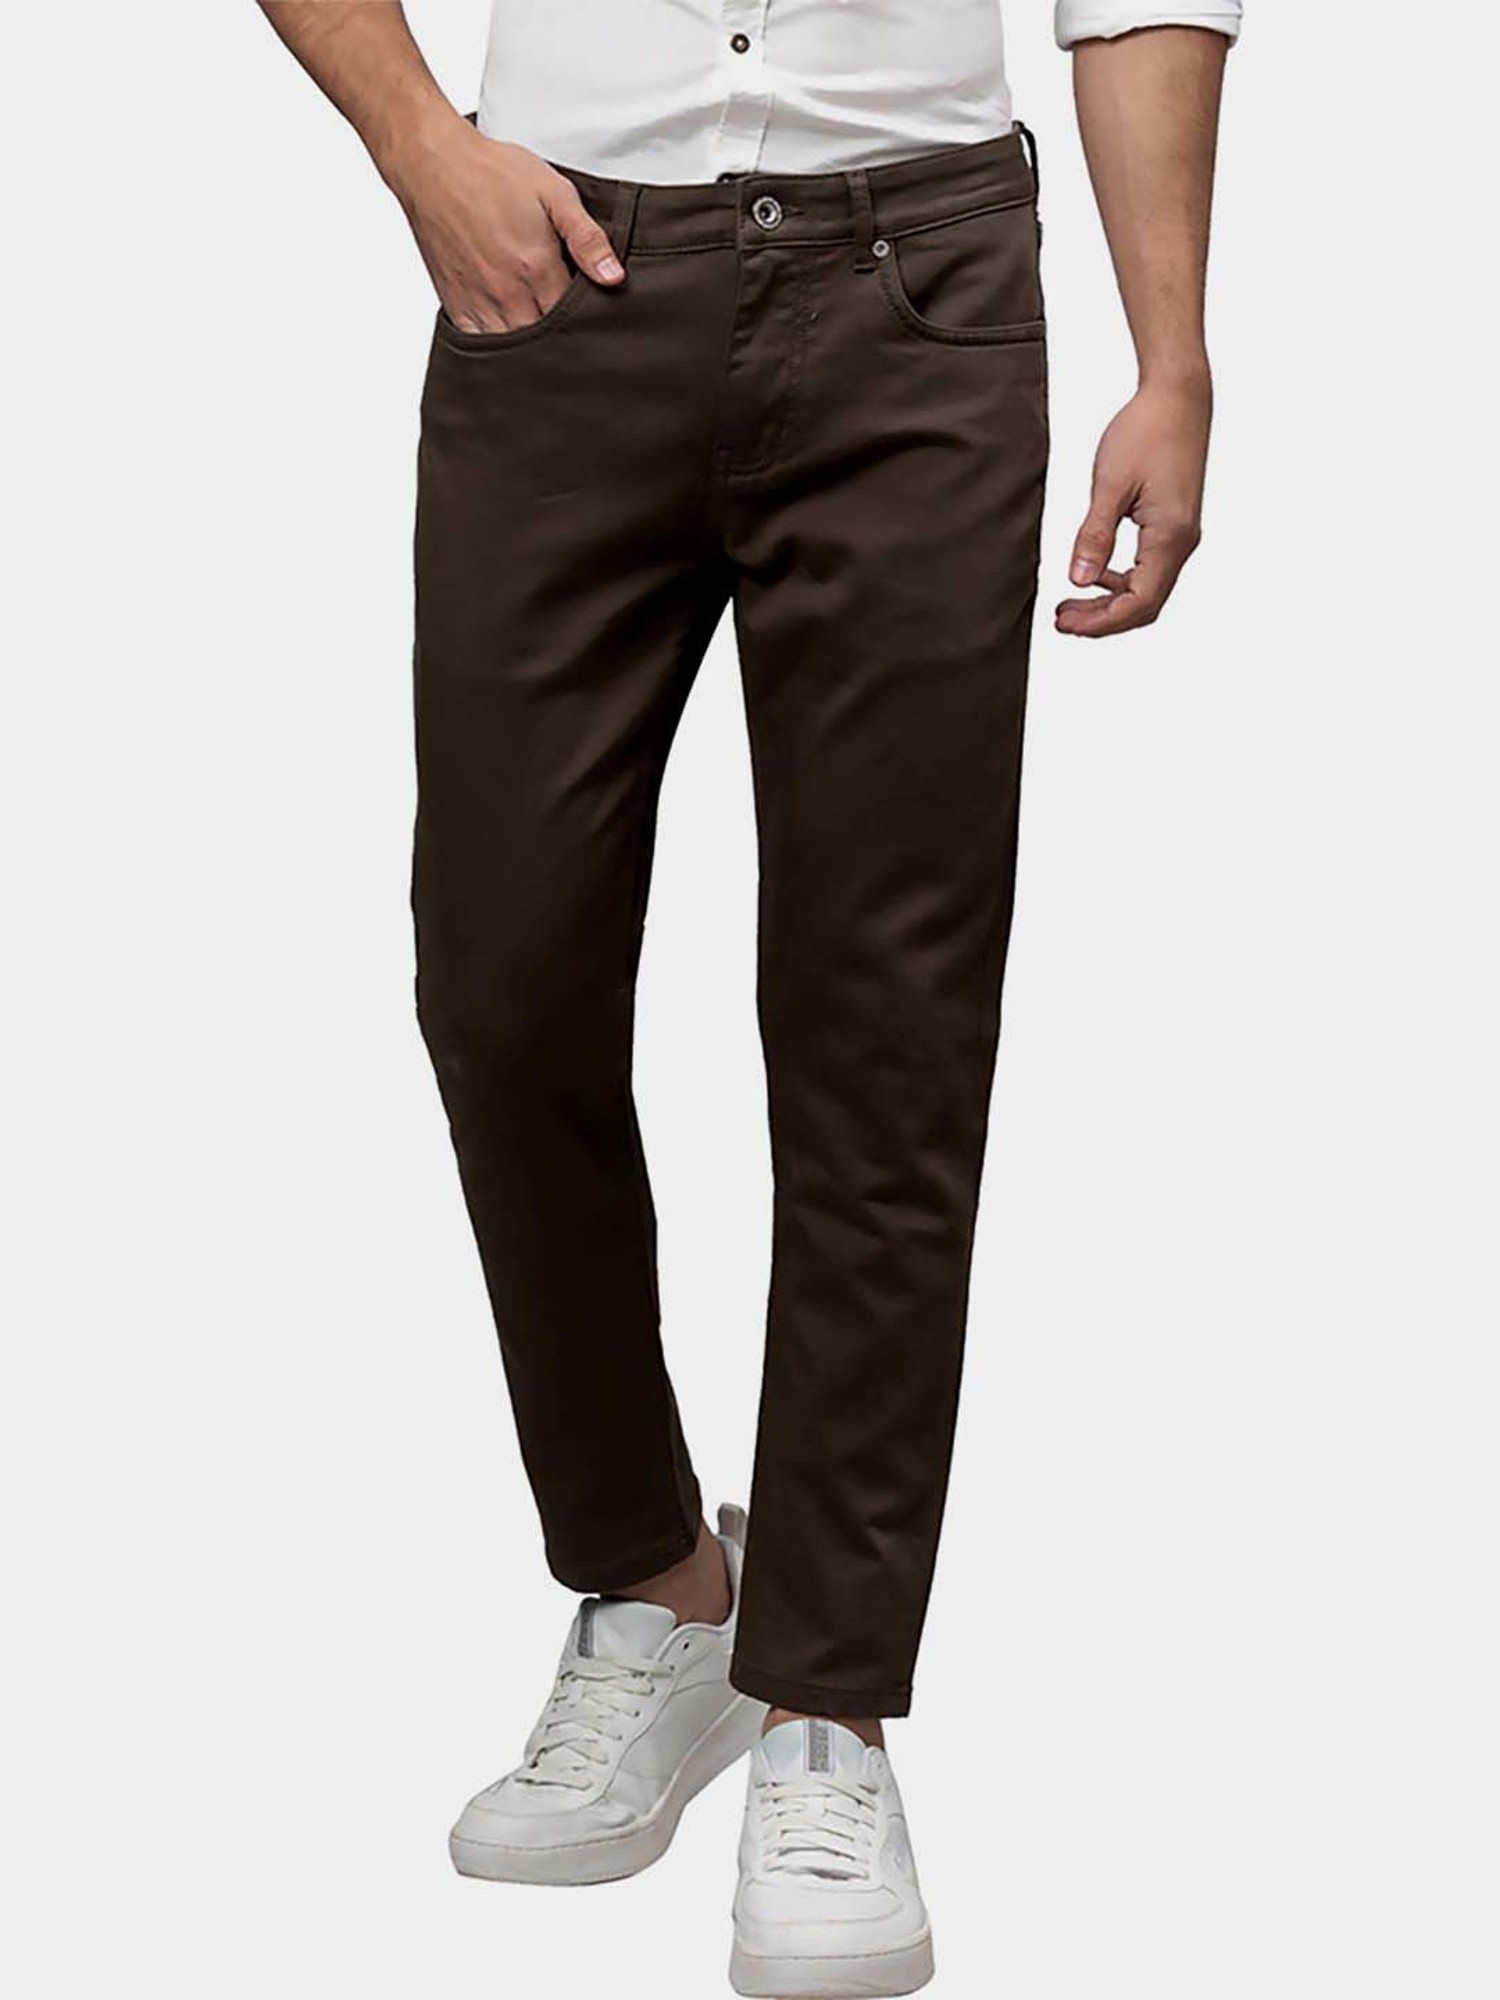 Shop Brown Denim Pants For Men online | Lazada.com.ph-nttc.com.vn